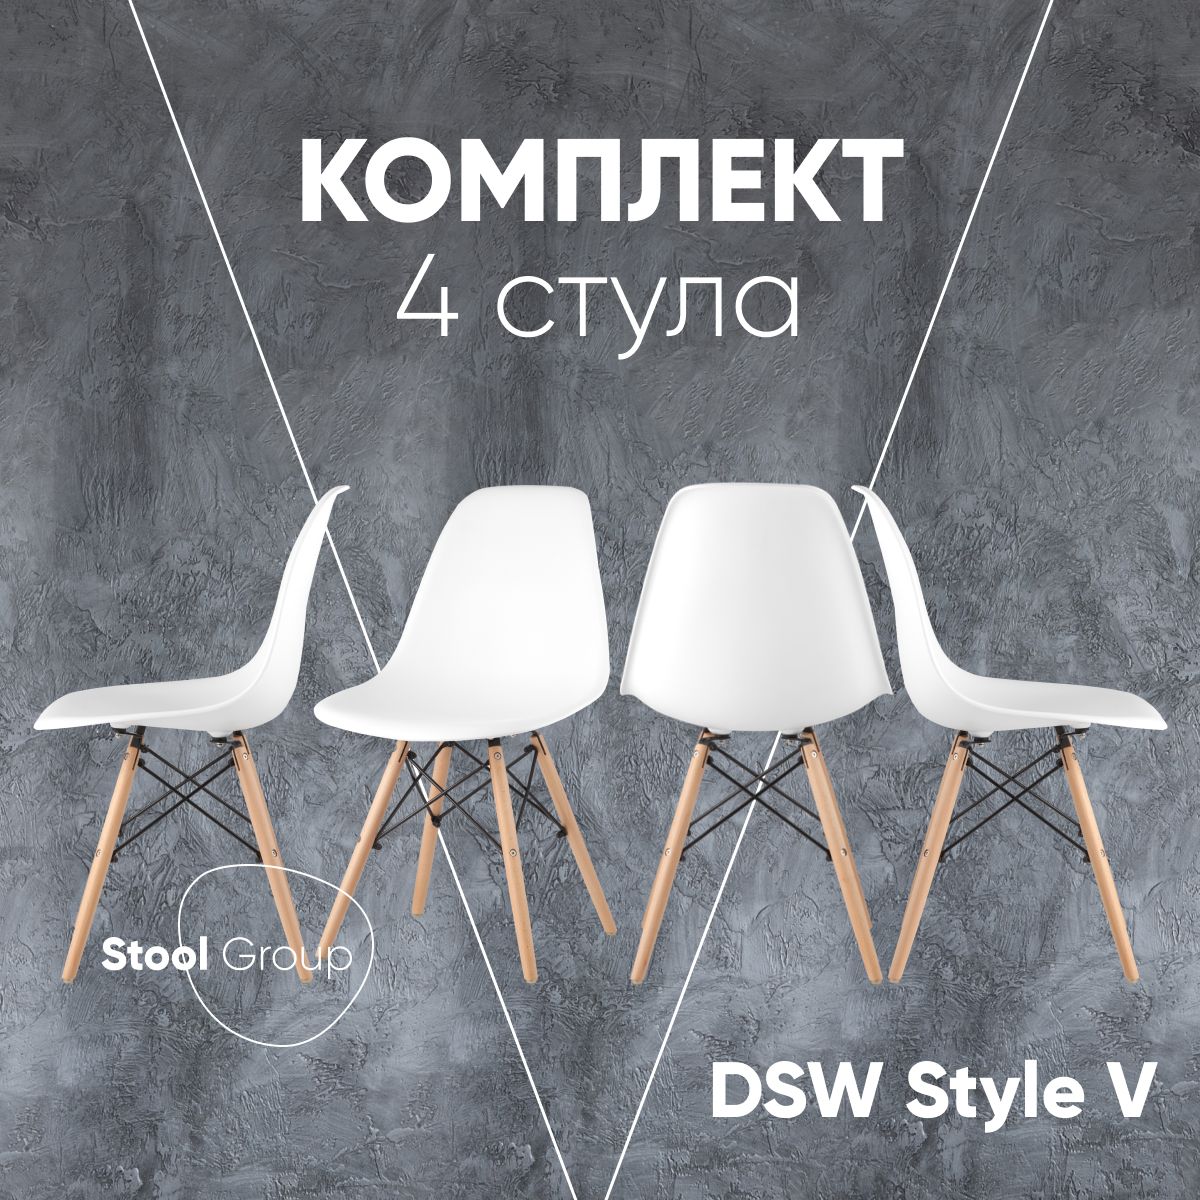 Дизайнерские стулья: белые пластиковые обеденные кресла из Китая и мягкие классические конструкции из фанеры (72 фото)